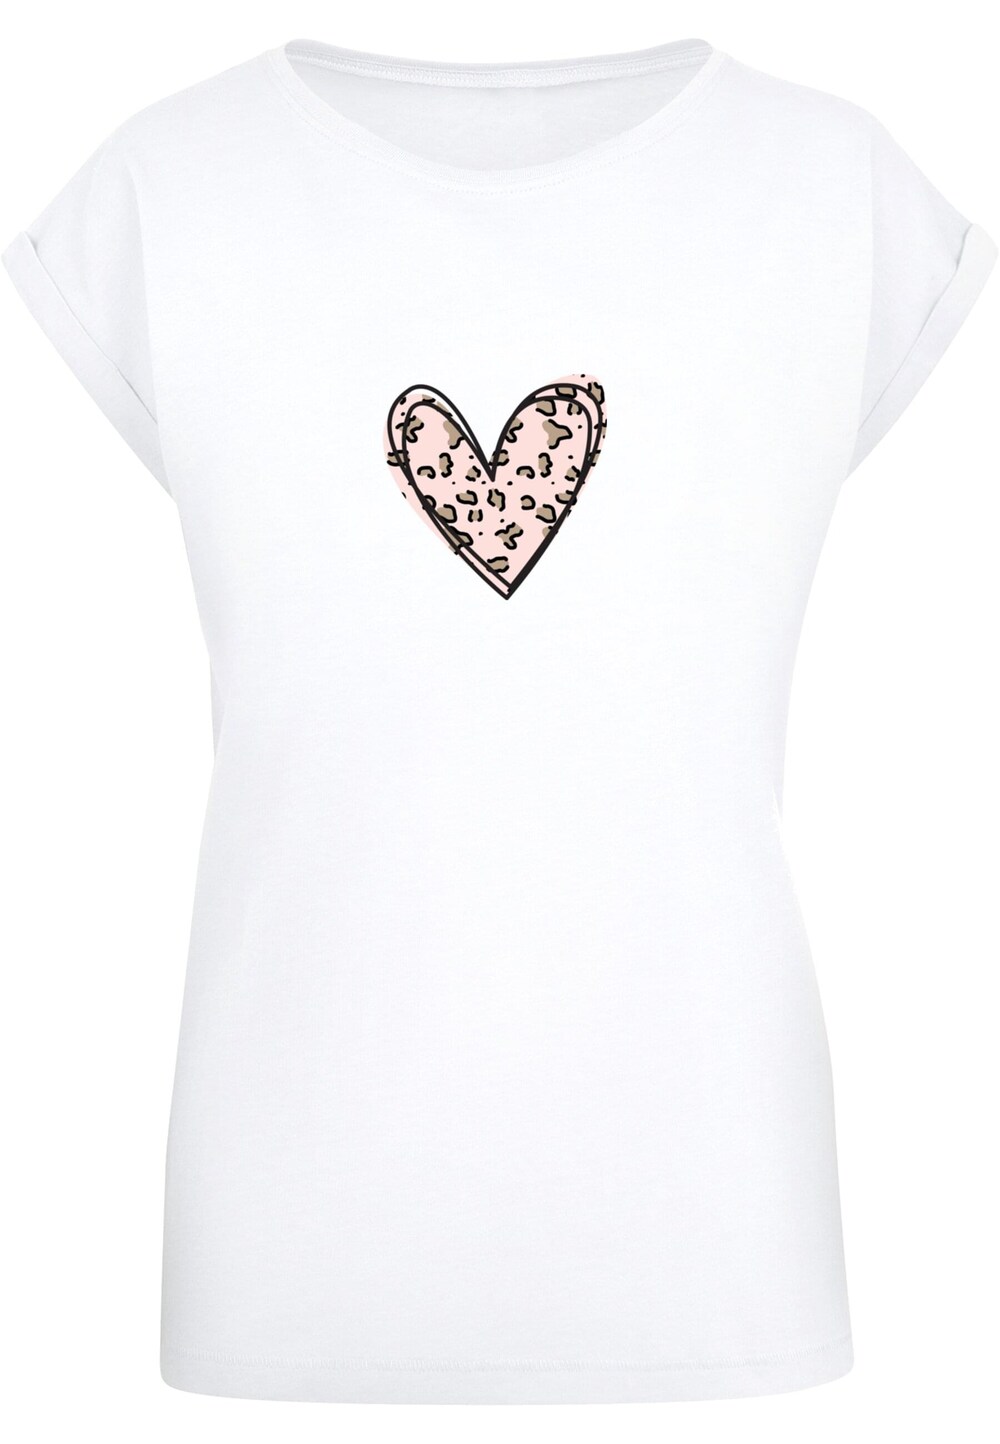 Рубашка Merchcode Valentines Day - Leopard Heart, белый